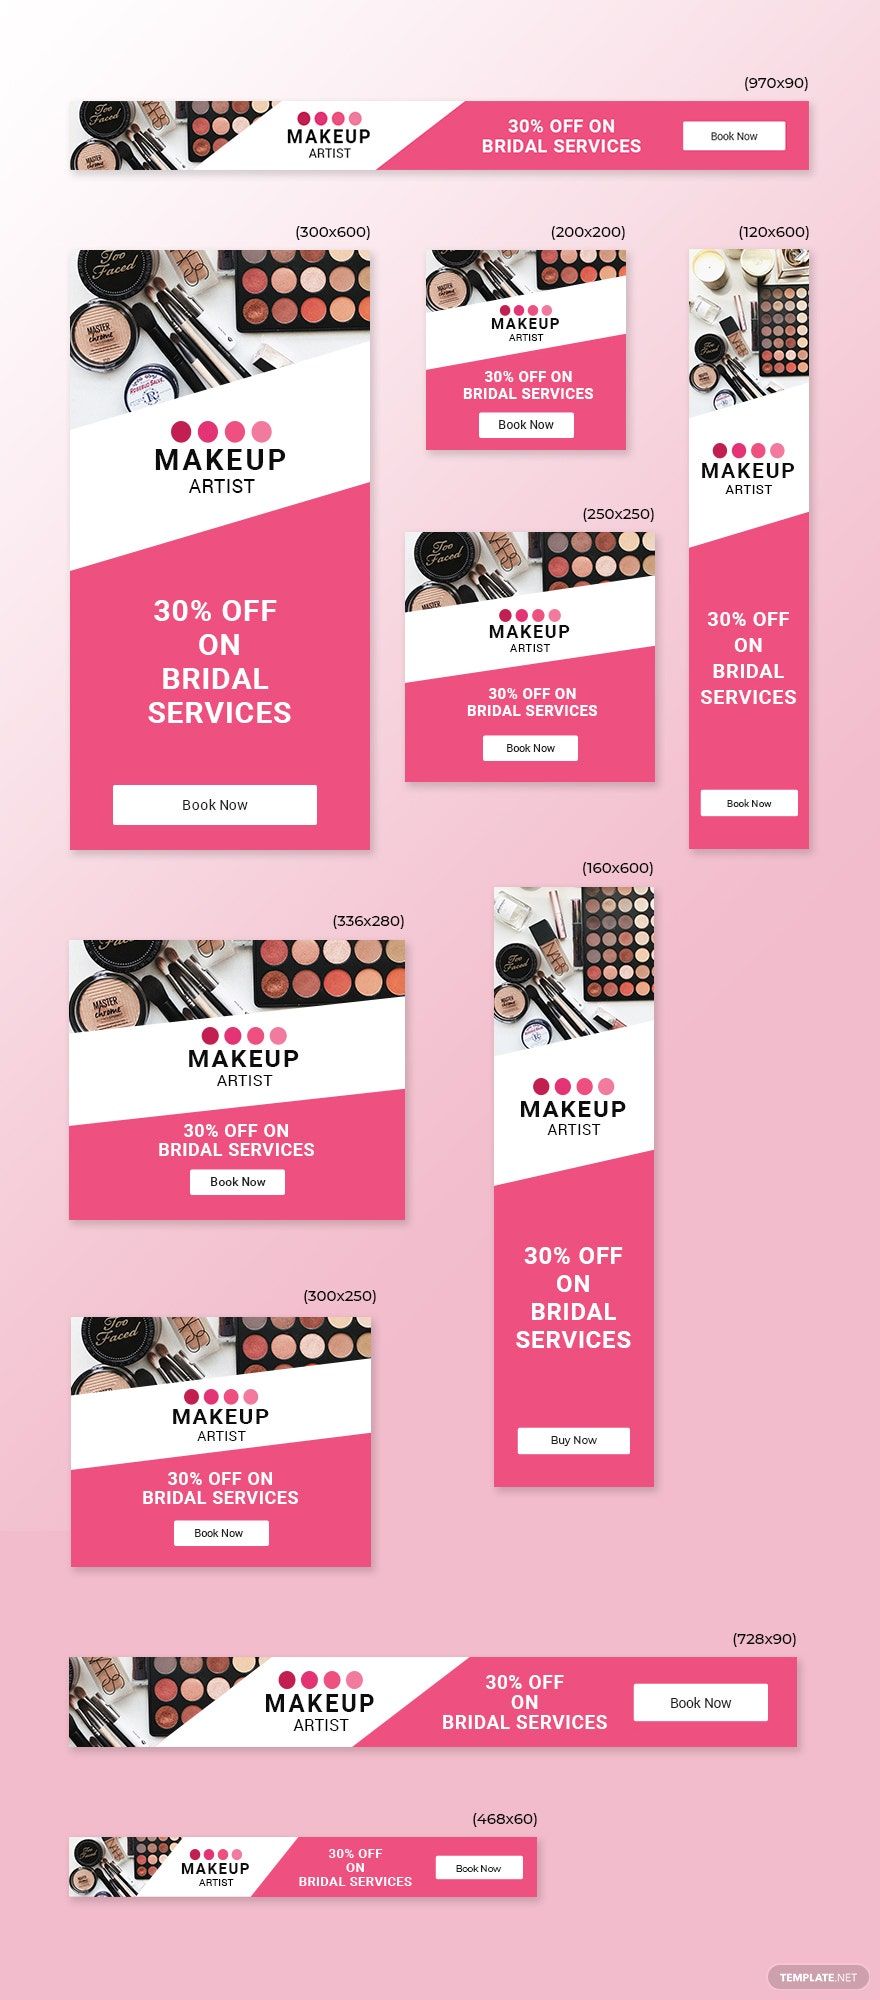 Makeup Artist Web Ads Template in PSD